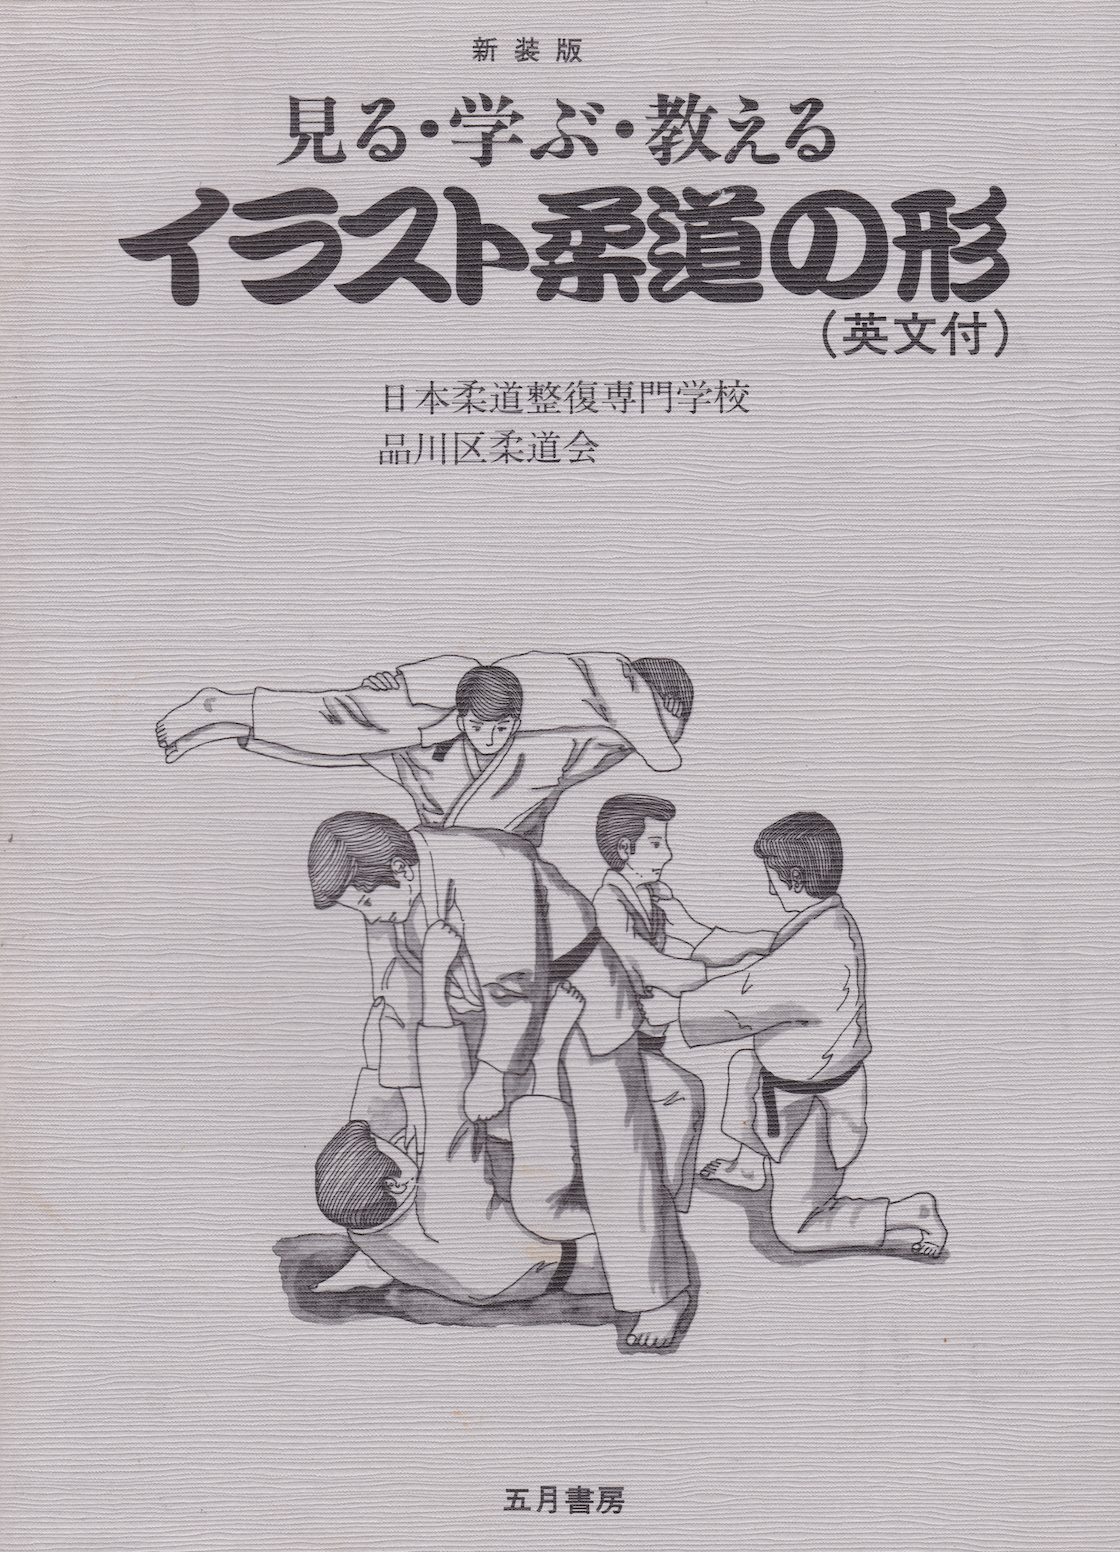 Libro ilustrado de Judo Kata (seminuevo)